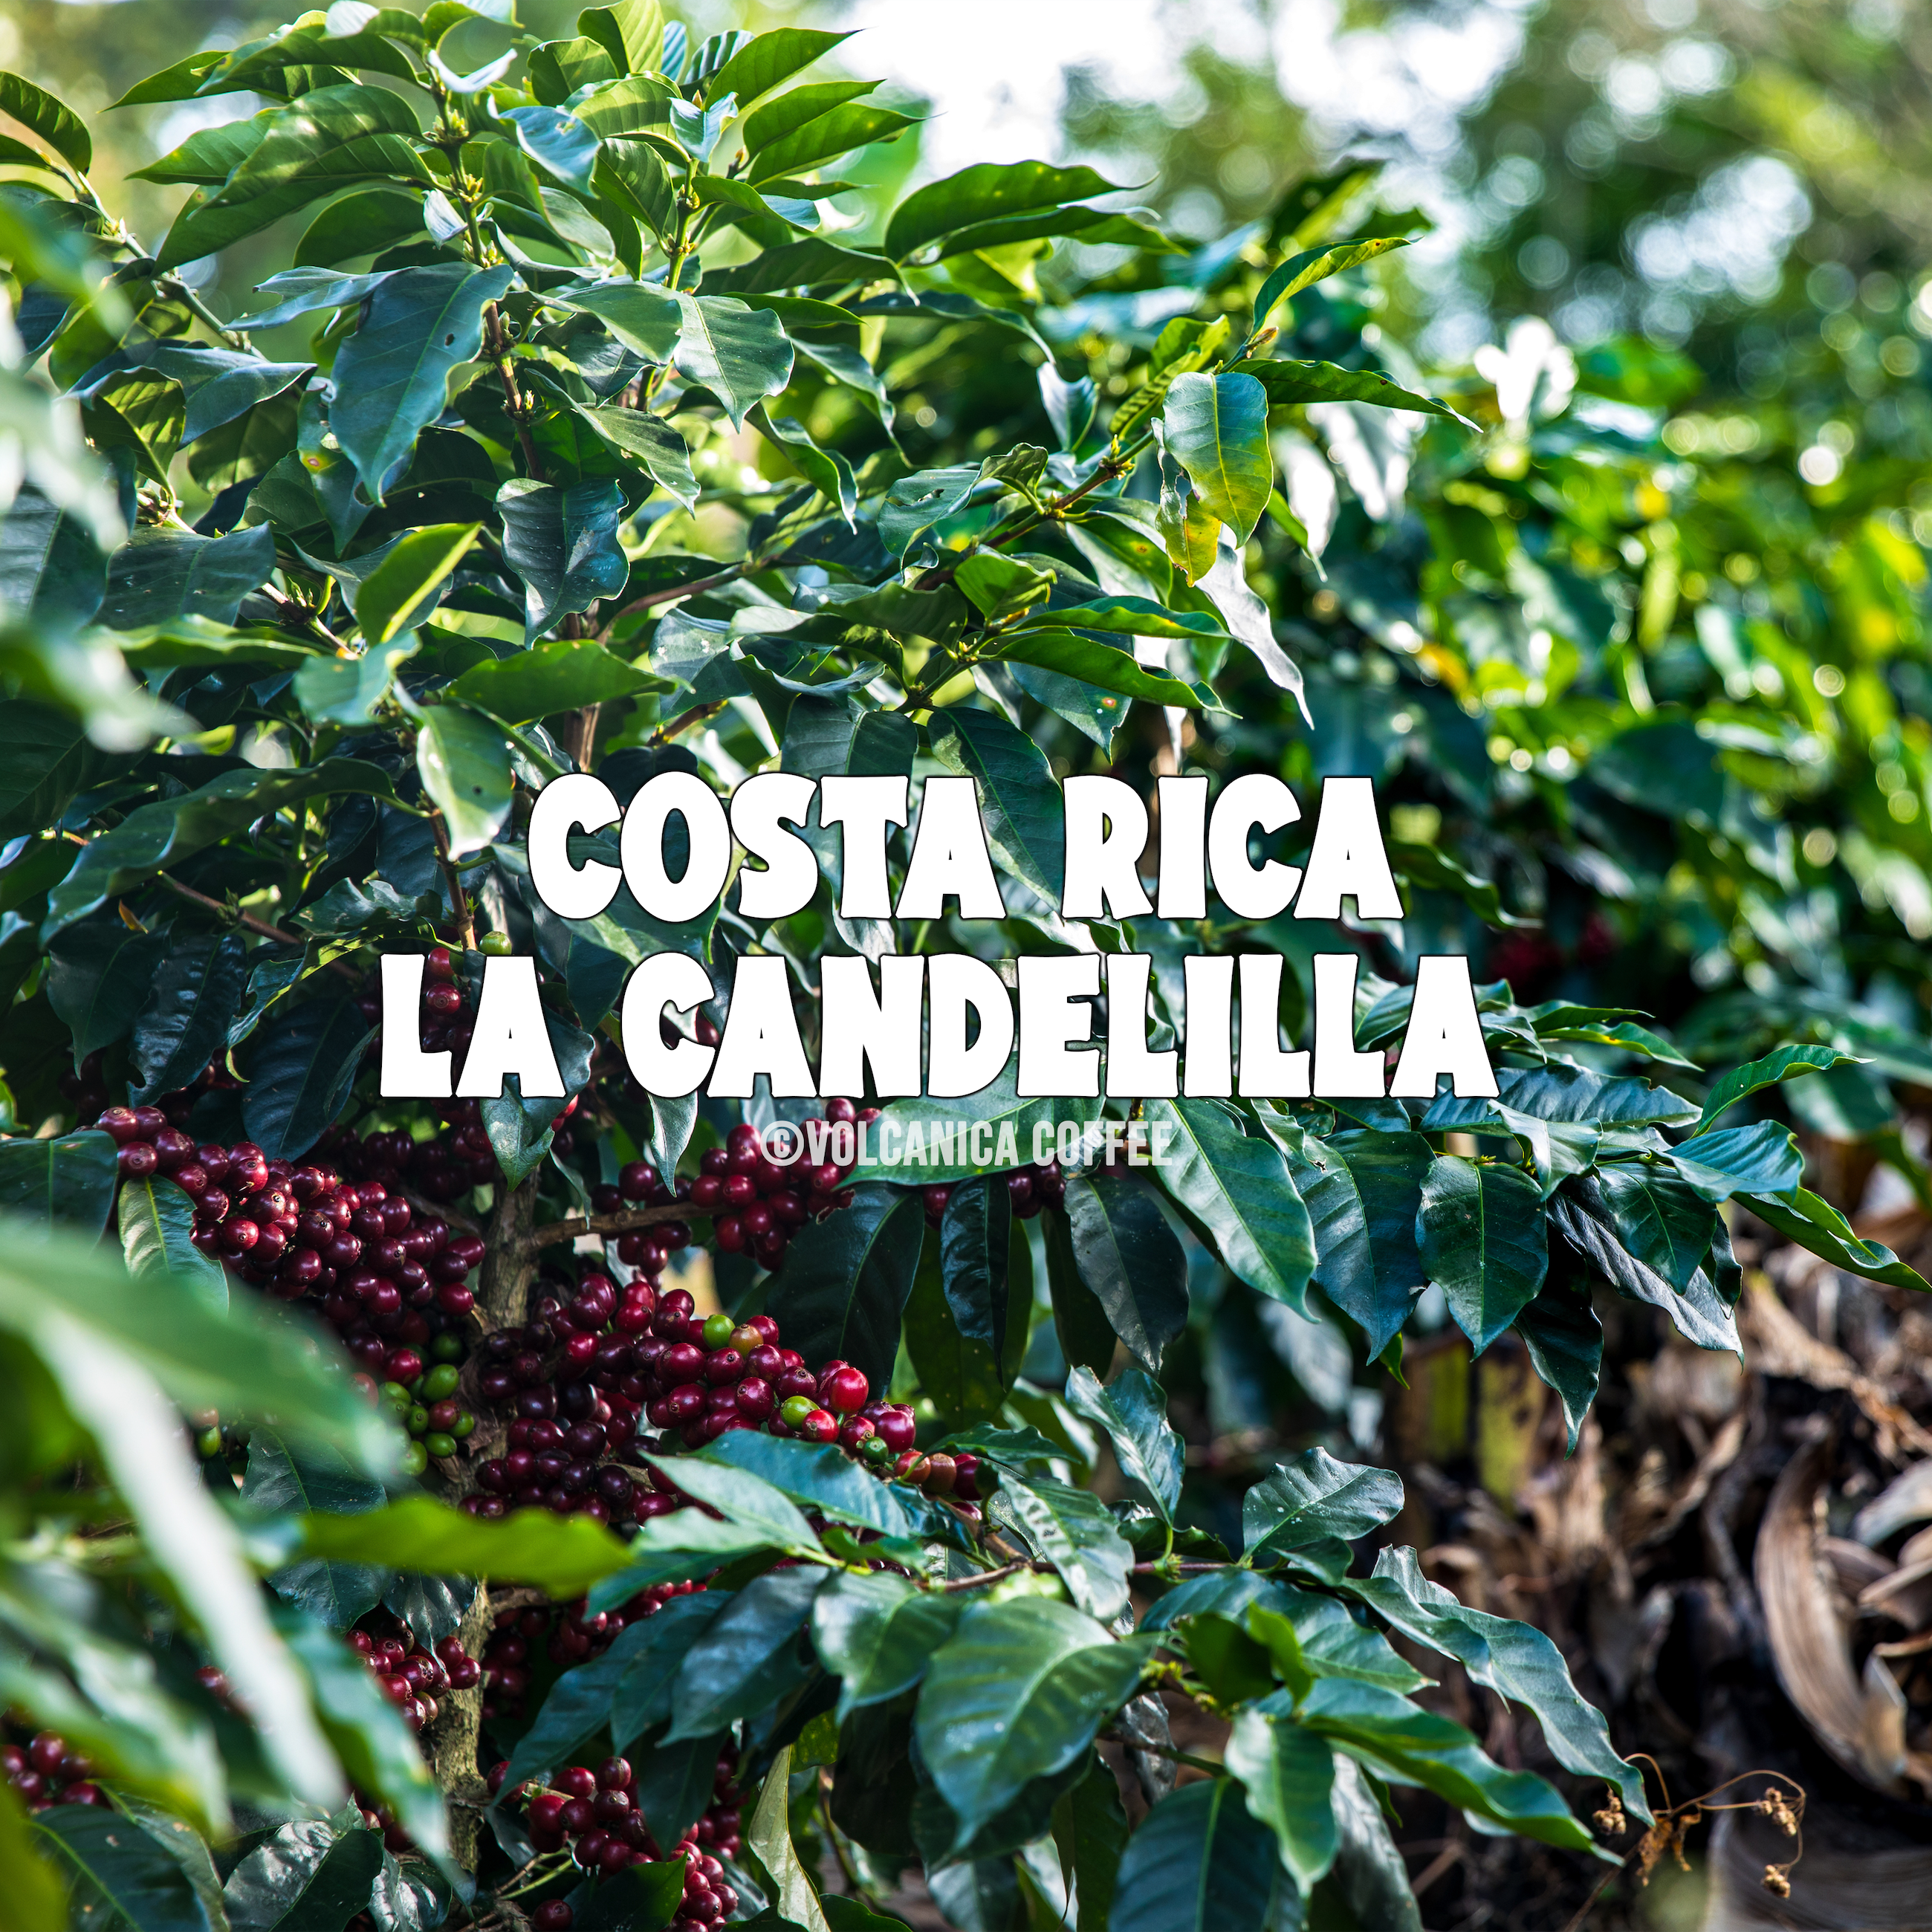 Costa Rica La Candelilla Coffee - Volcanica Coffee